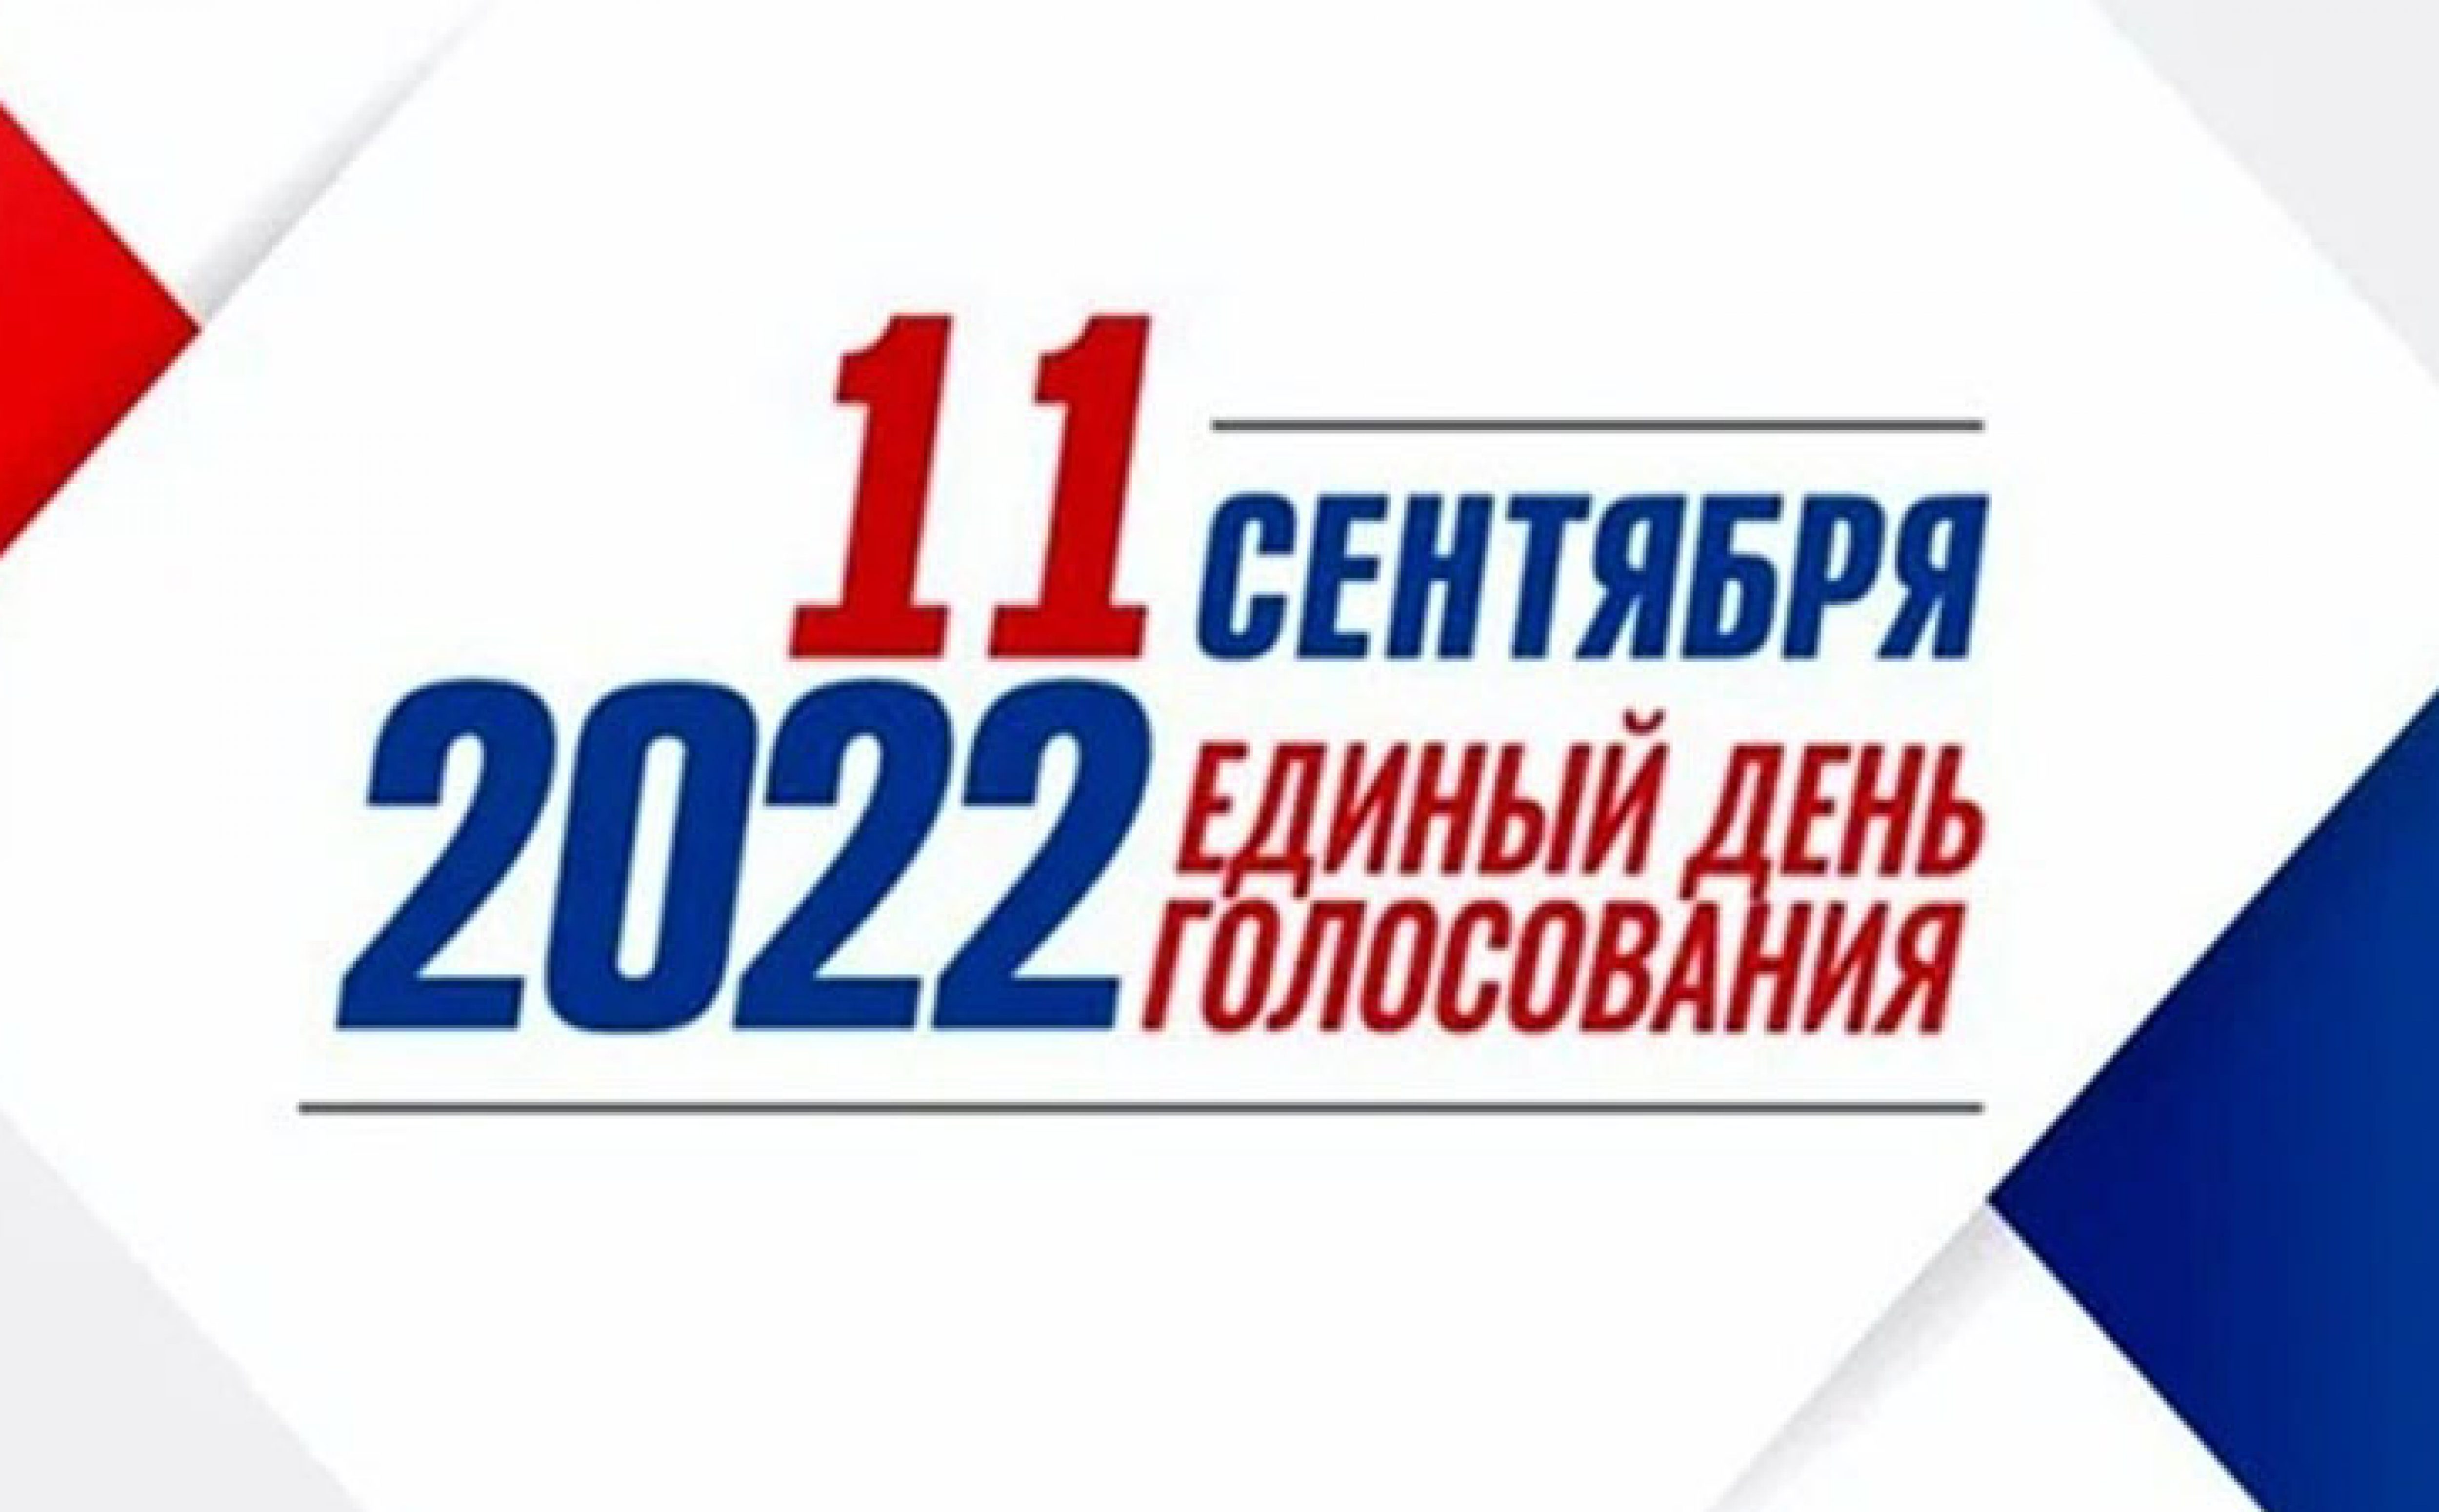 Выборы сентябрь 24. Выборы 2022. Выборы картинки. Единый день голосования 2022. Выборы плакат.